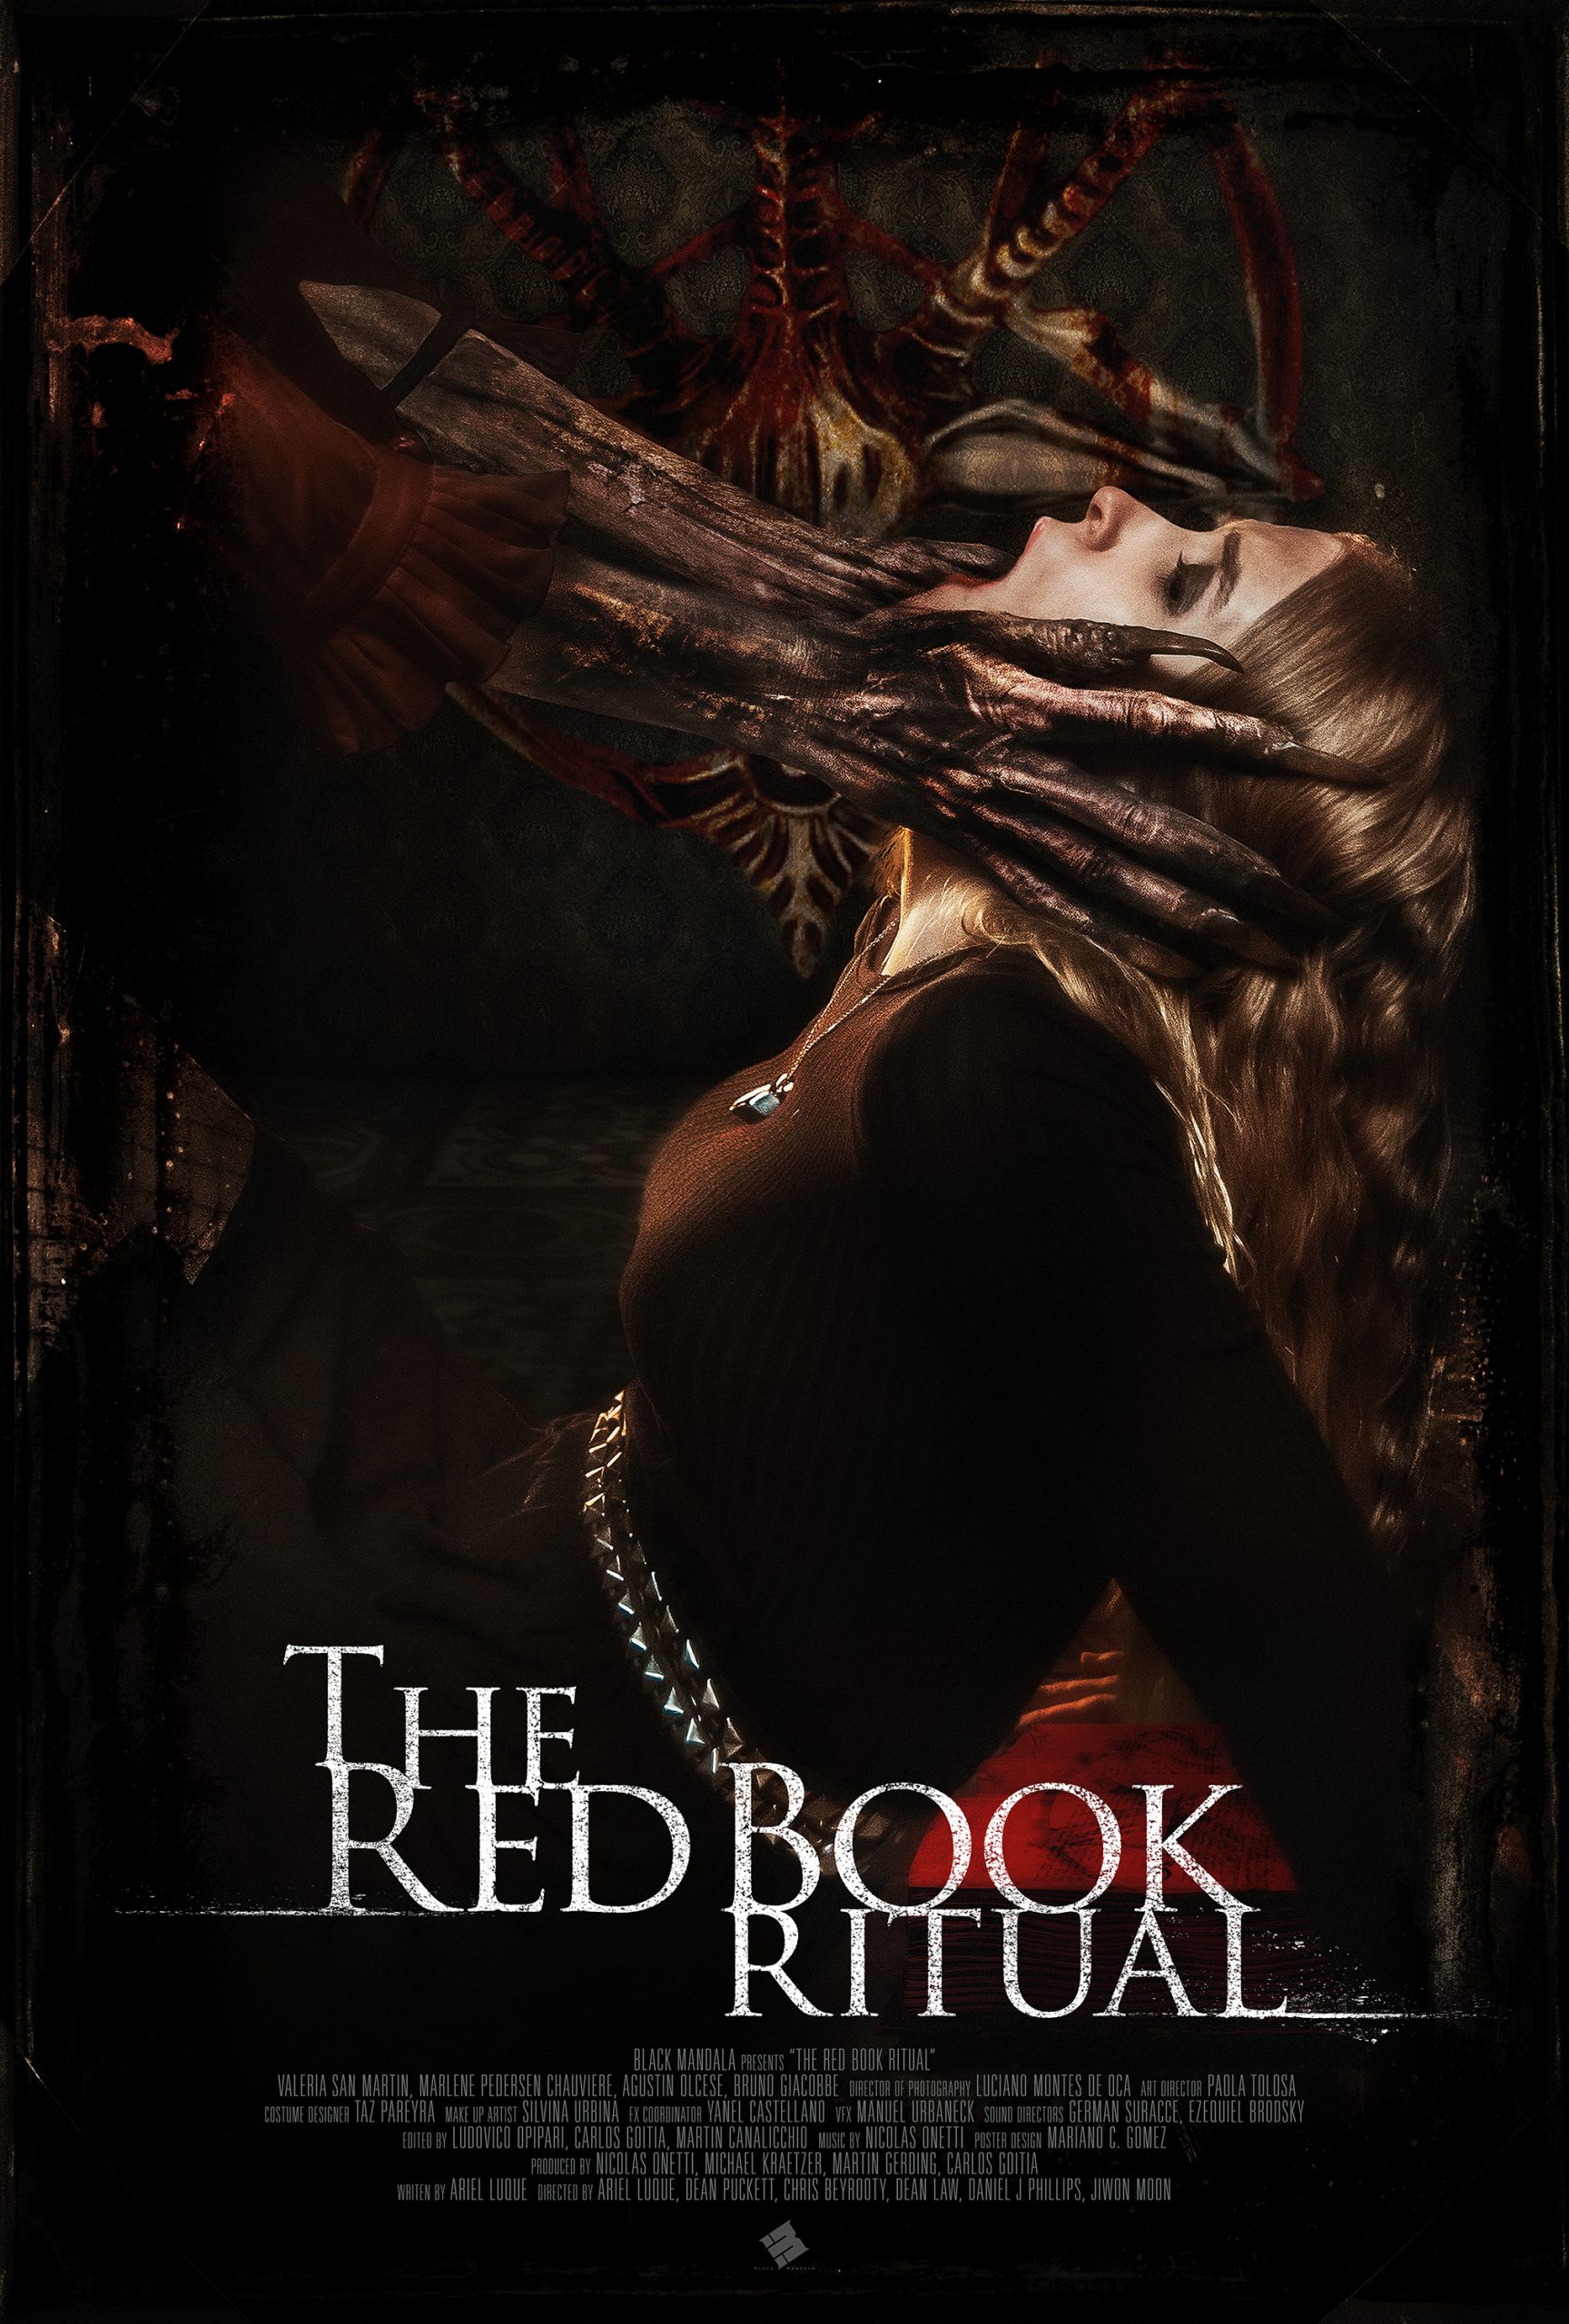 [NEWS] Trailer e locandine dell’horror The Red Book Ritual